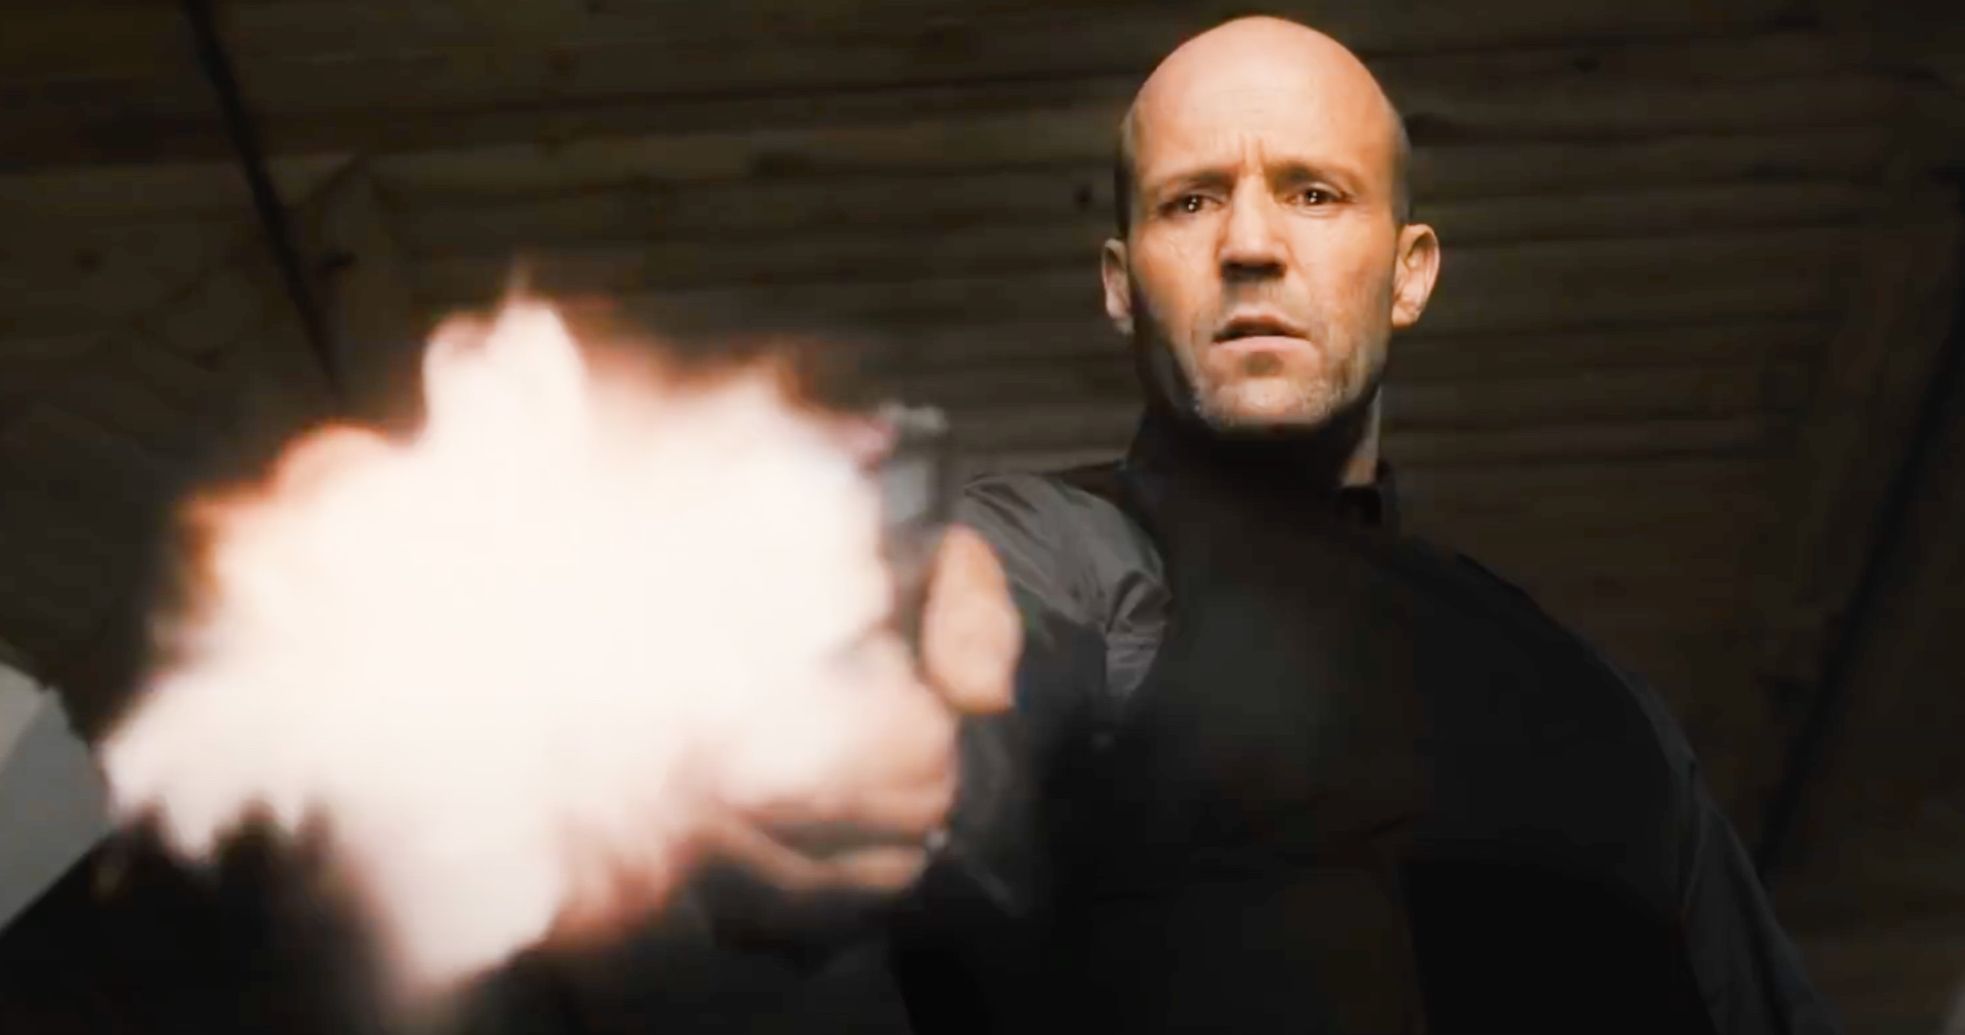 Wrath of Man Red Band Trailer Sends Jason Statham on a Brutal Revenge-Fueled Ramage